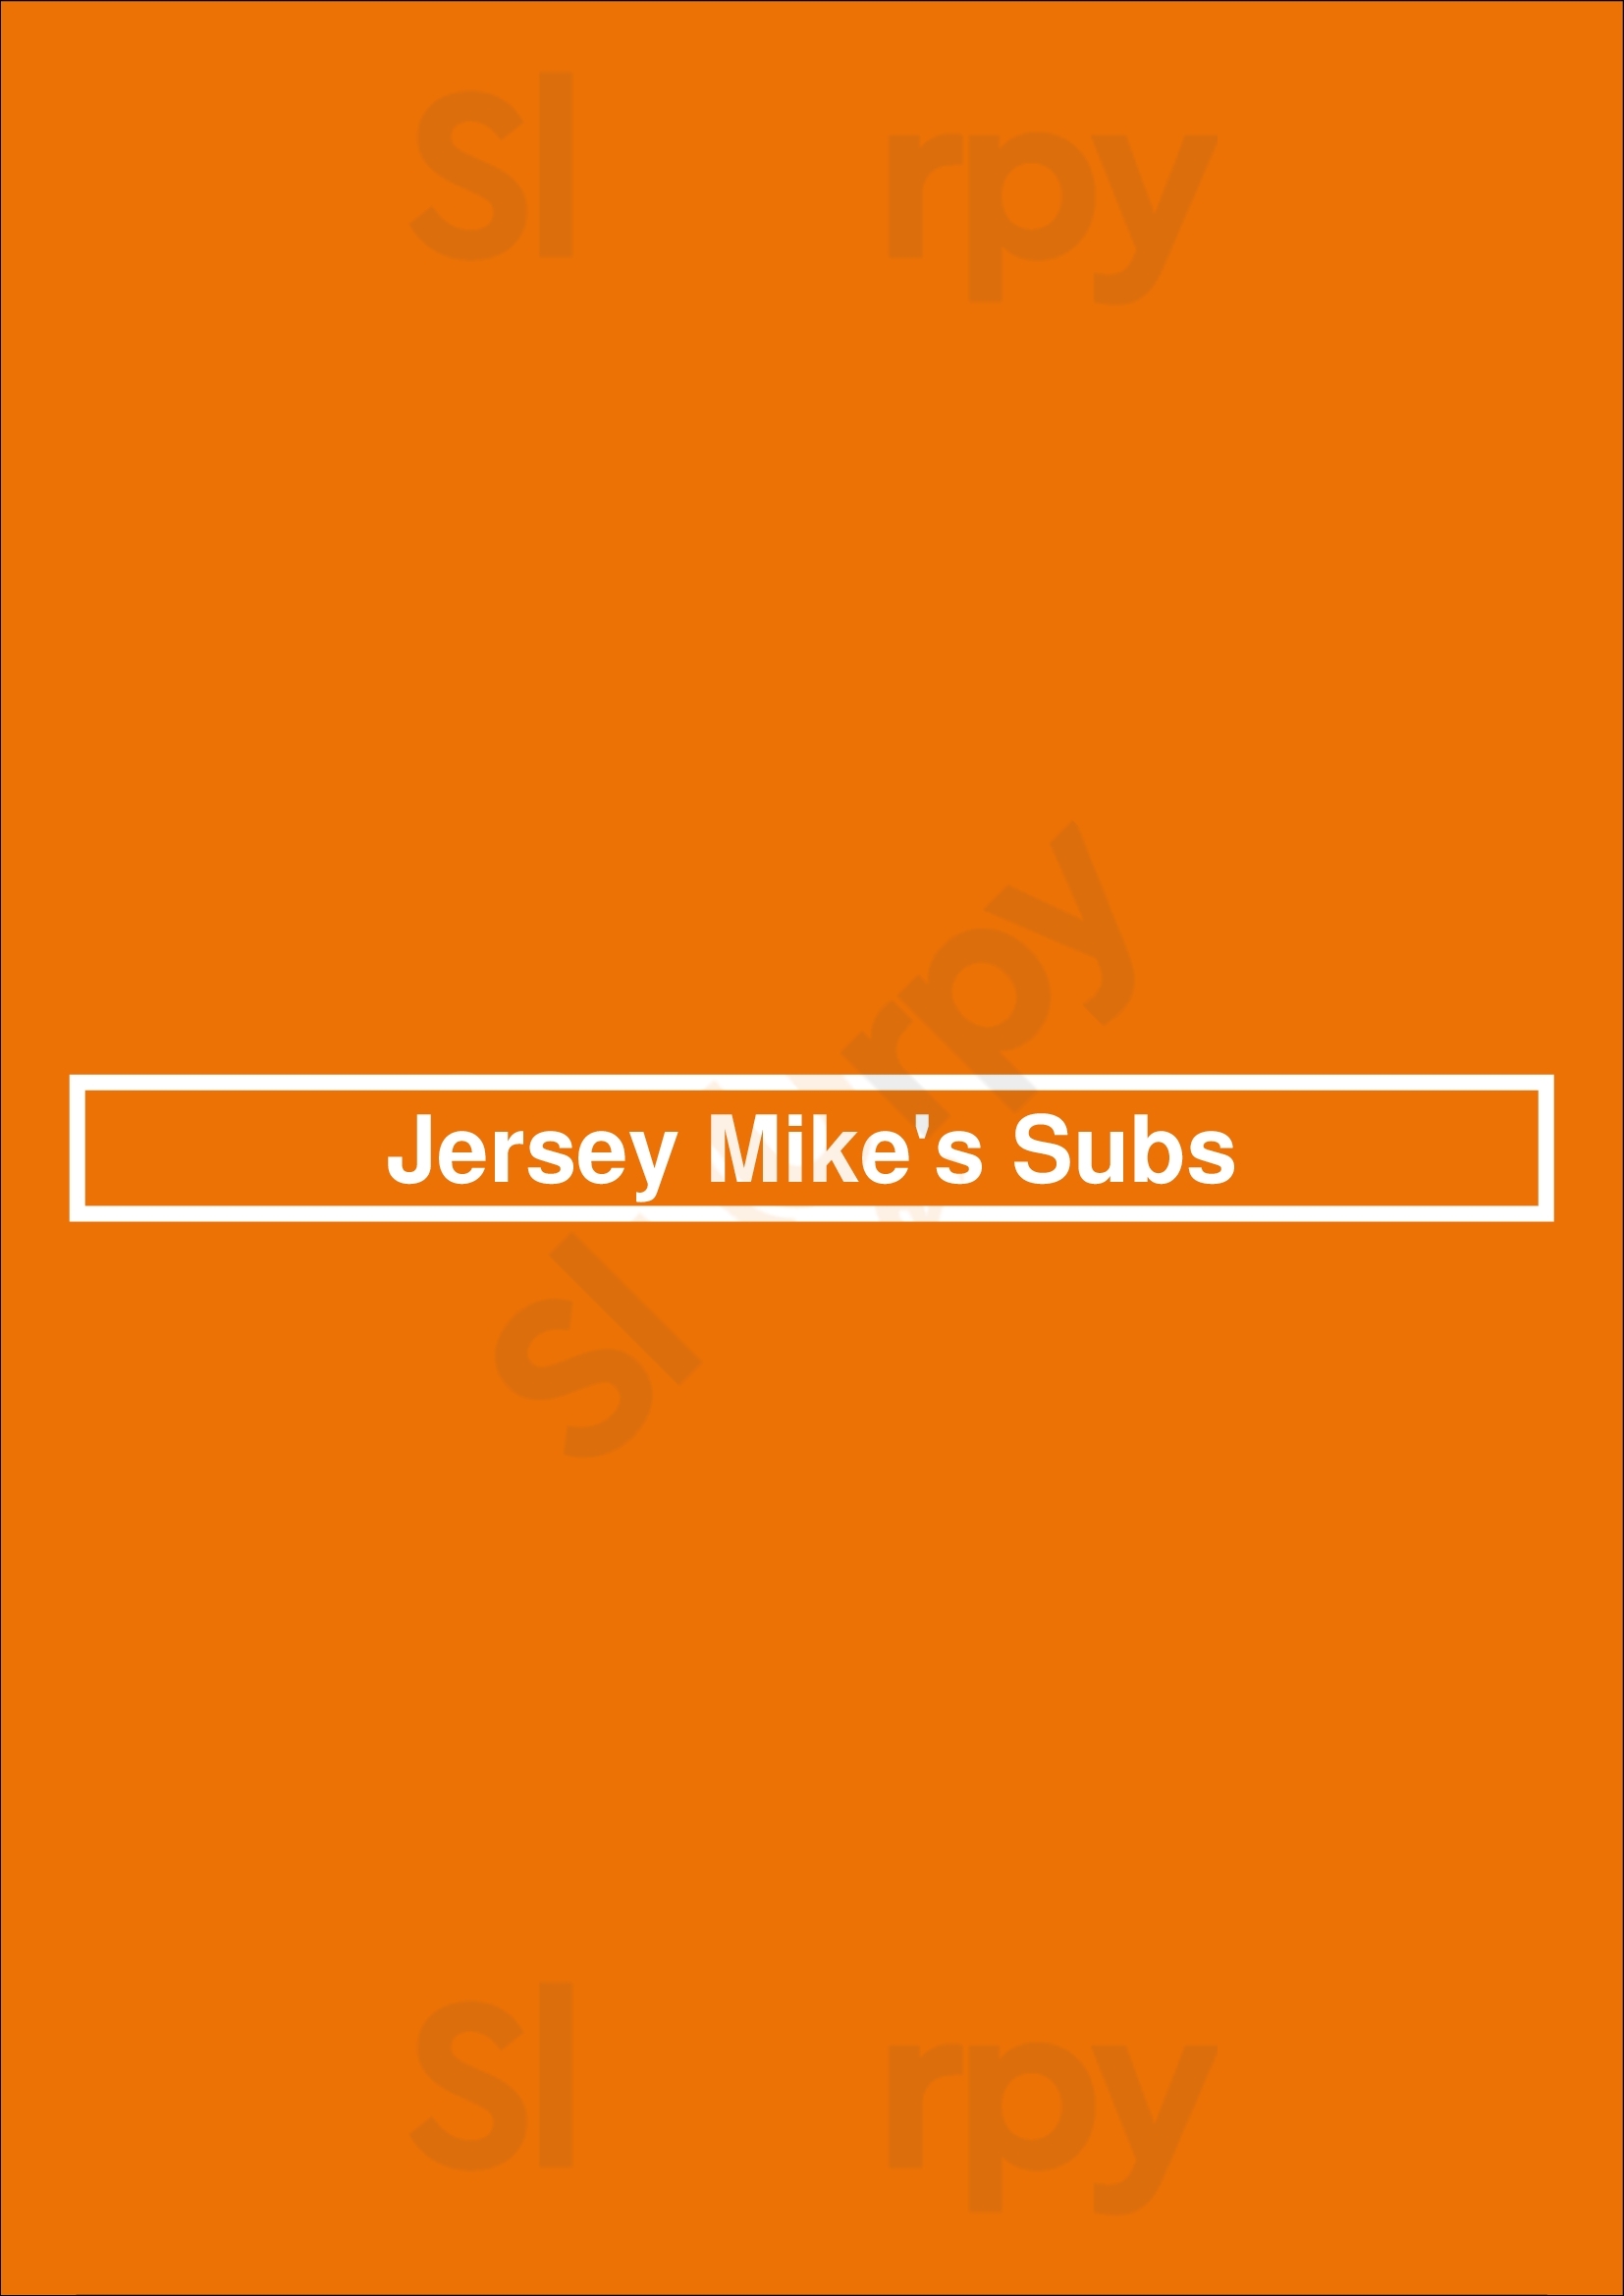 Jersey Mike's Subs Sacramento Menu - 1